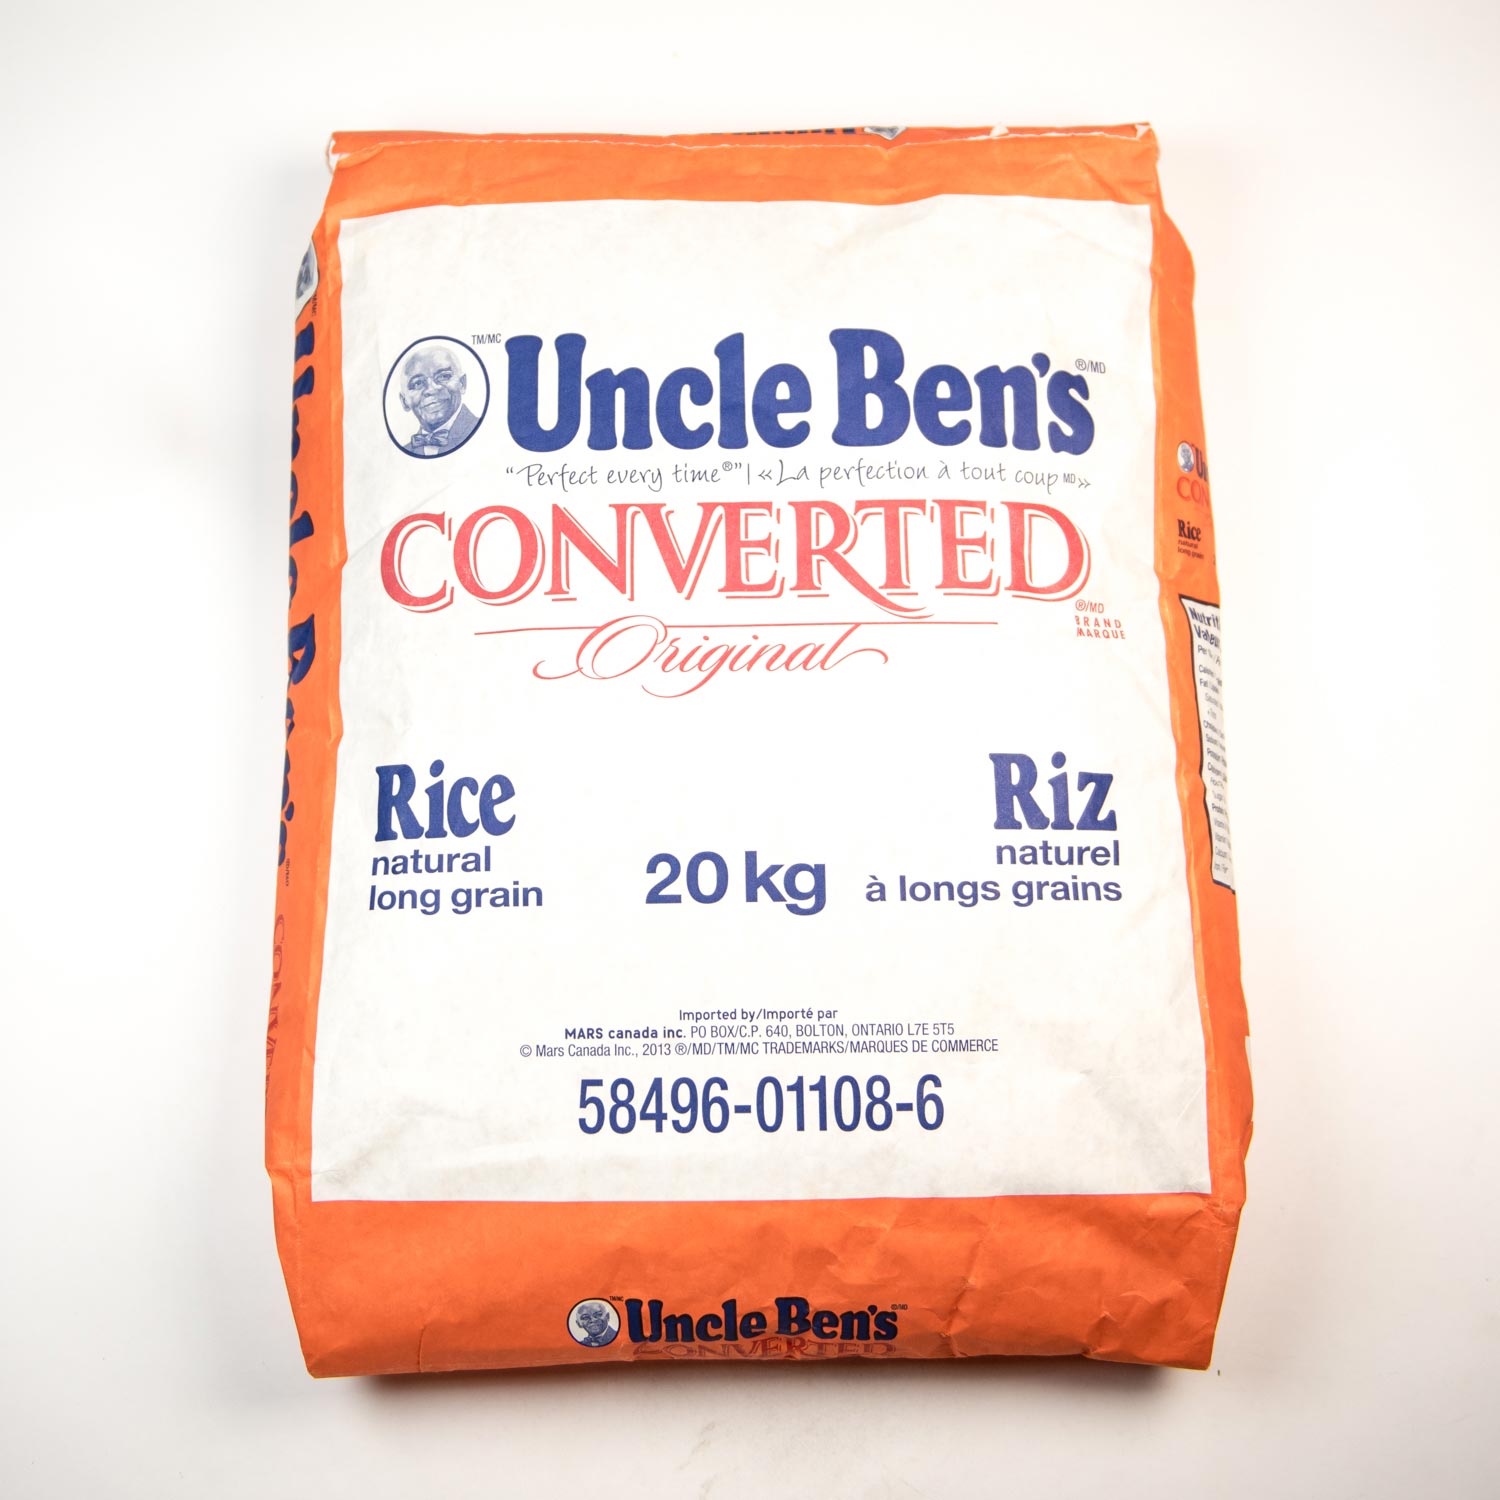 Riz Long Grain - Uncle Ben's - 500 g